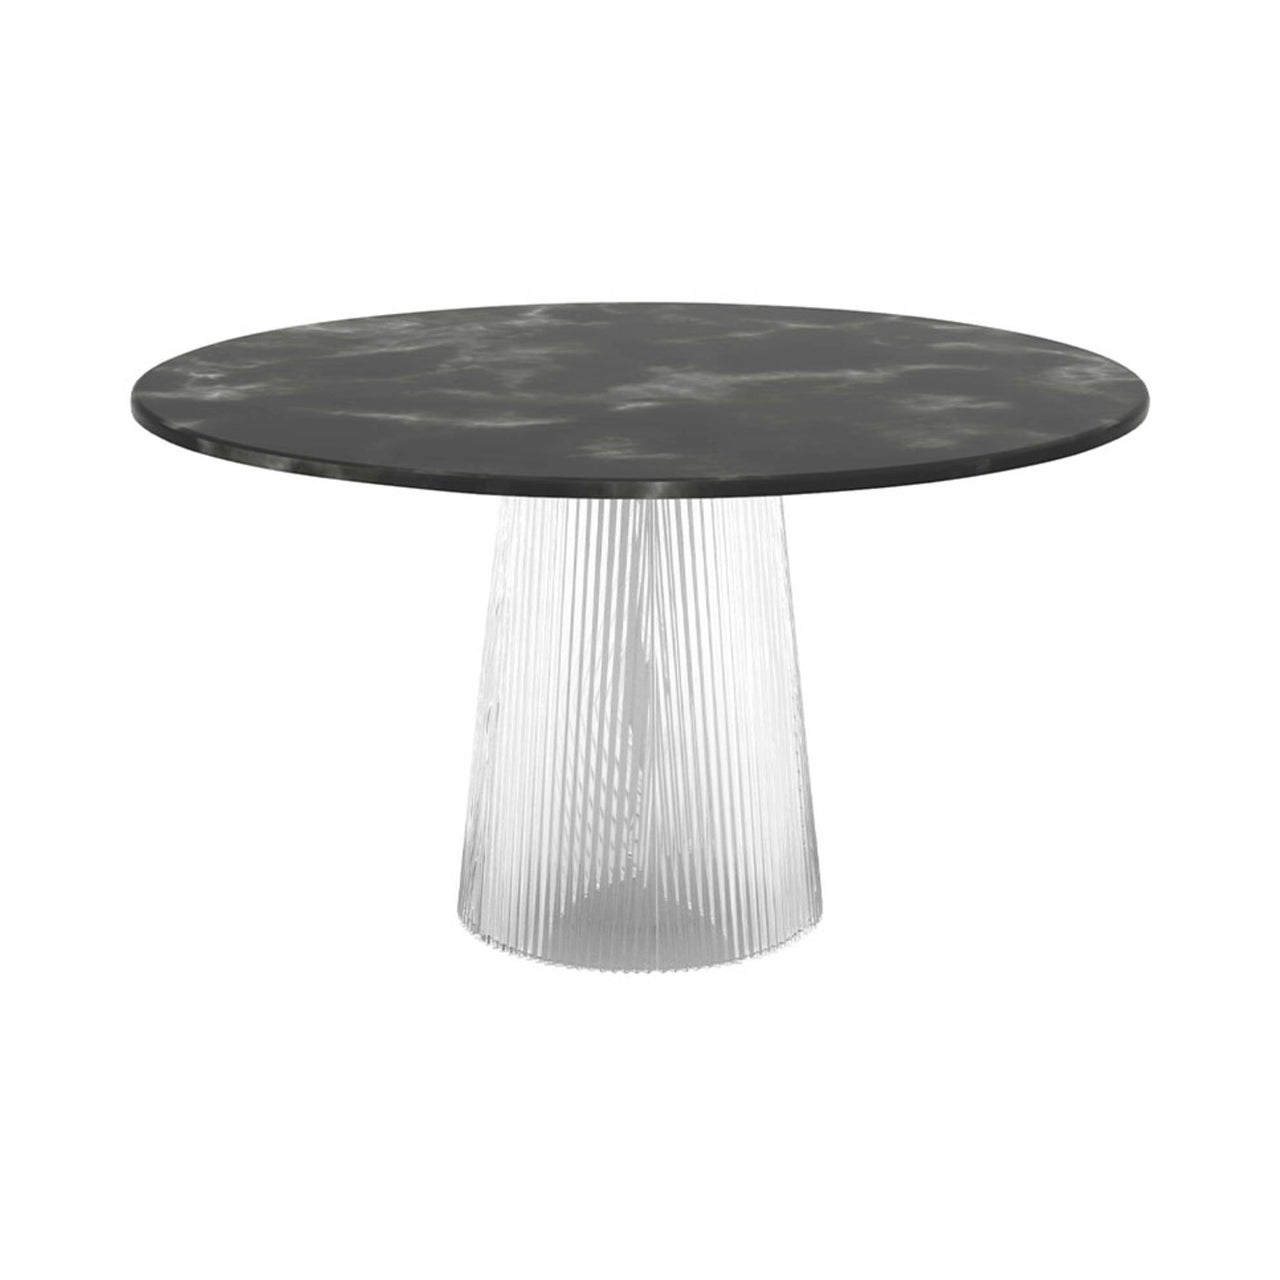 Bent Dining Table: Light Green + Transparent